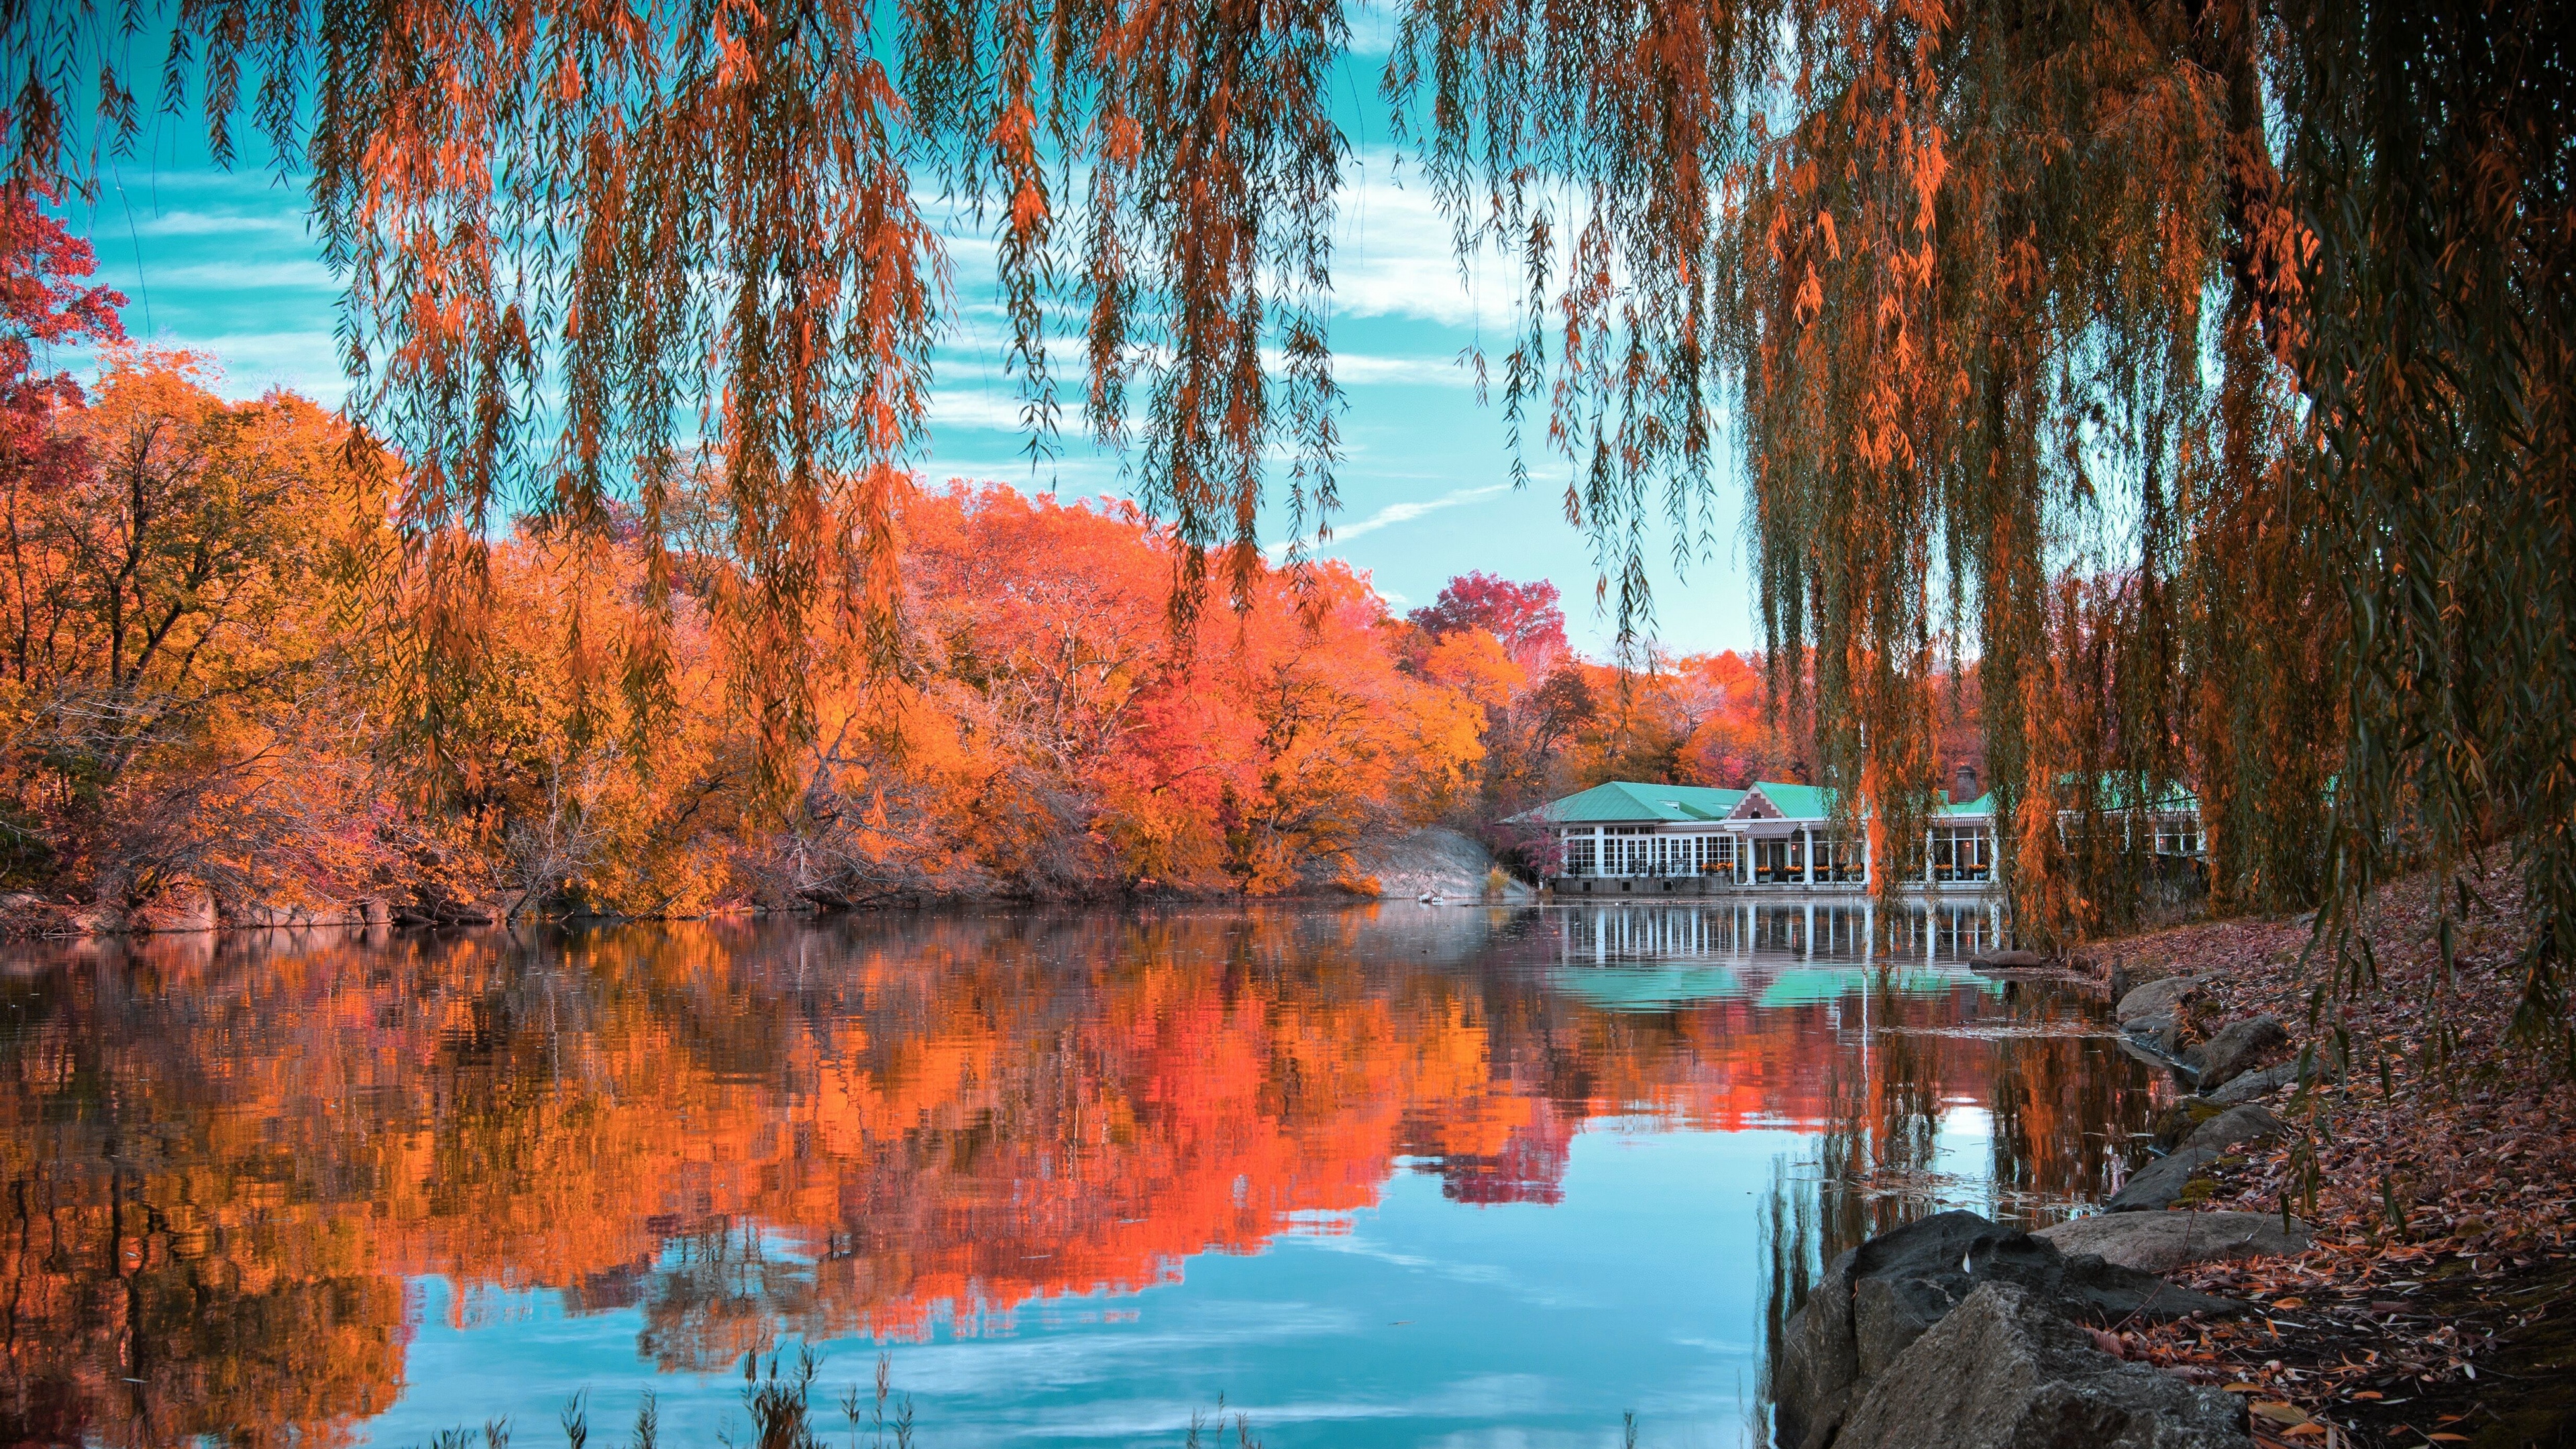 Lac à central parc - New York.jpg